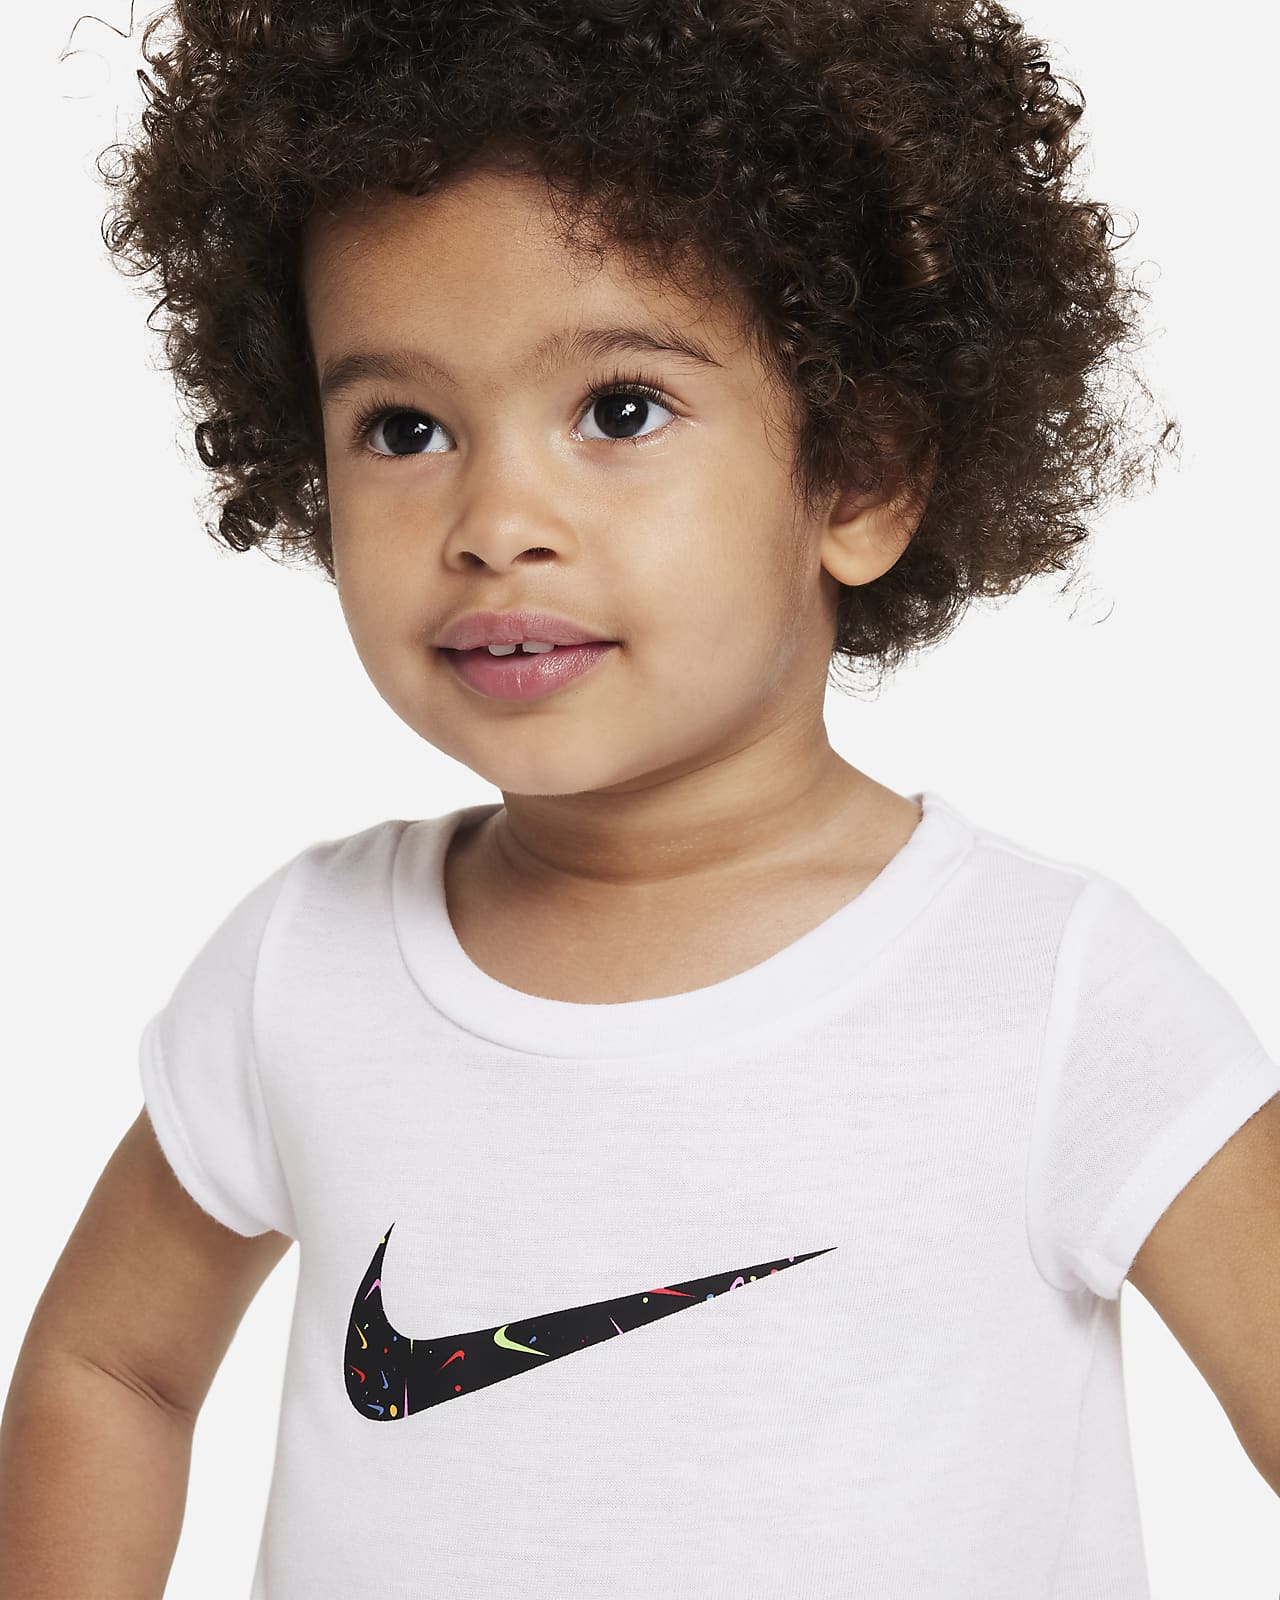 Generoso Persona australiana Mujer Nike Conjunto de camiseta y leggings - Bebé (12-24M). Nike ES